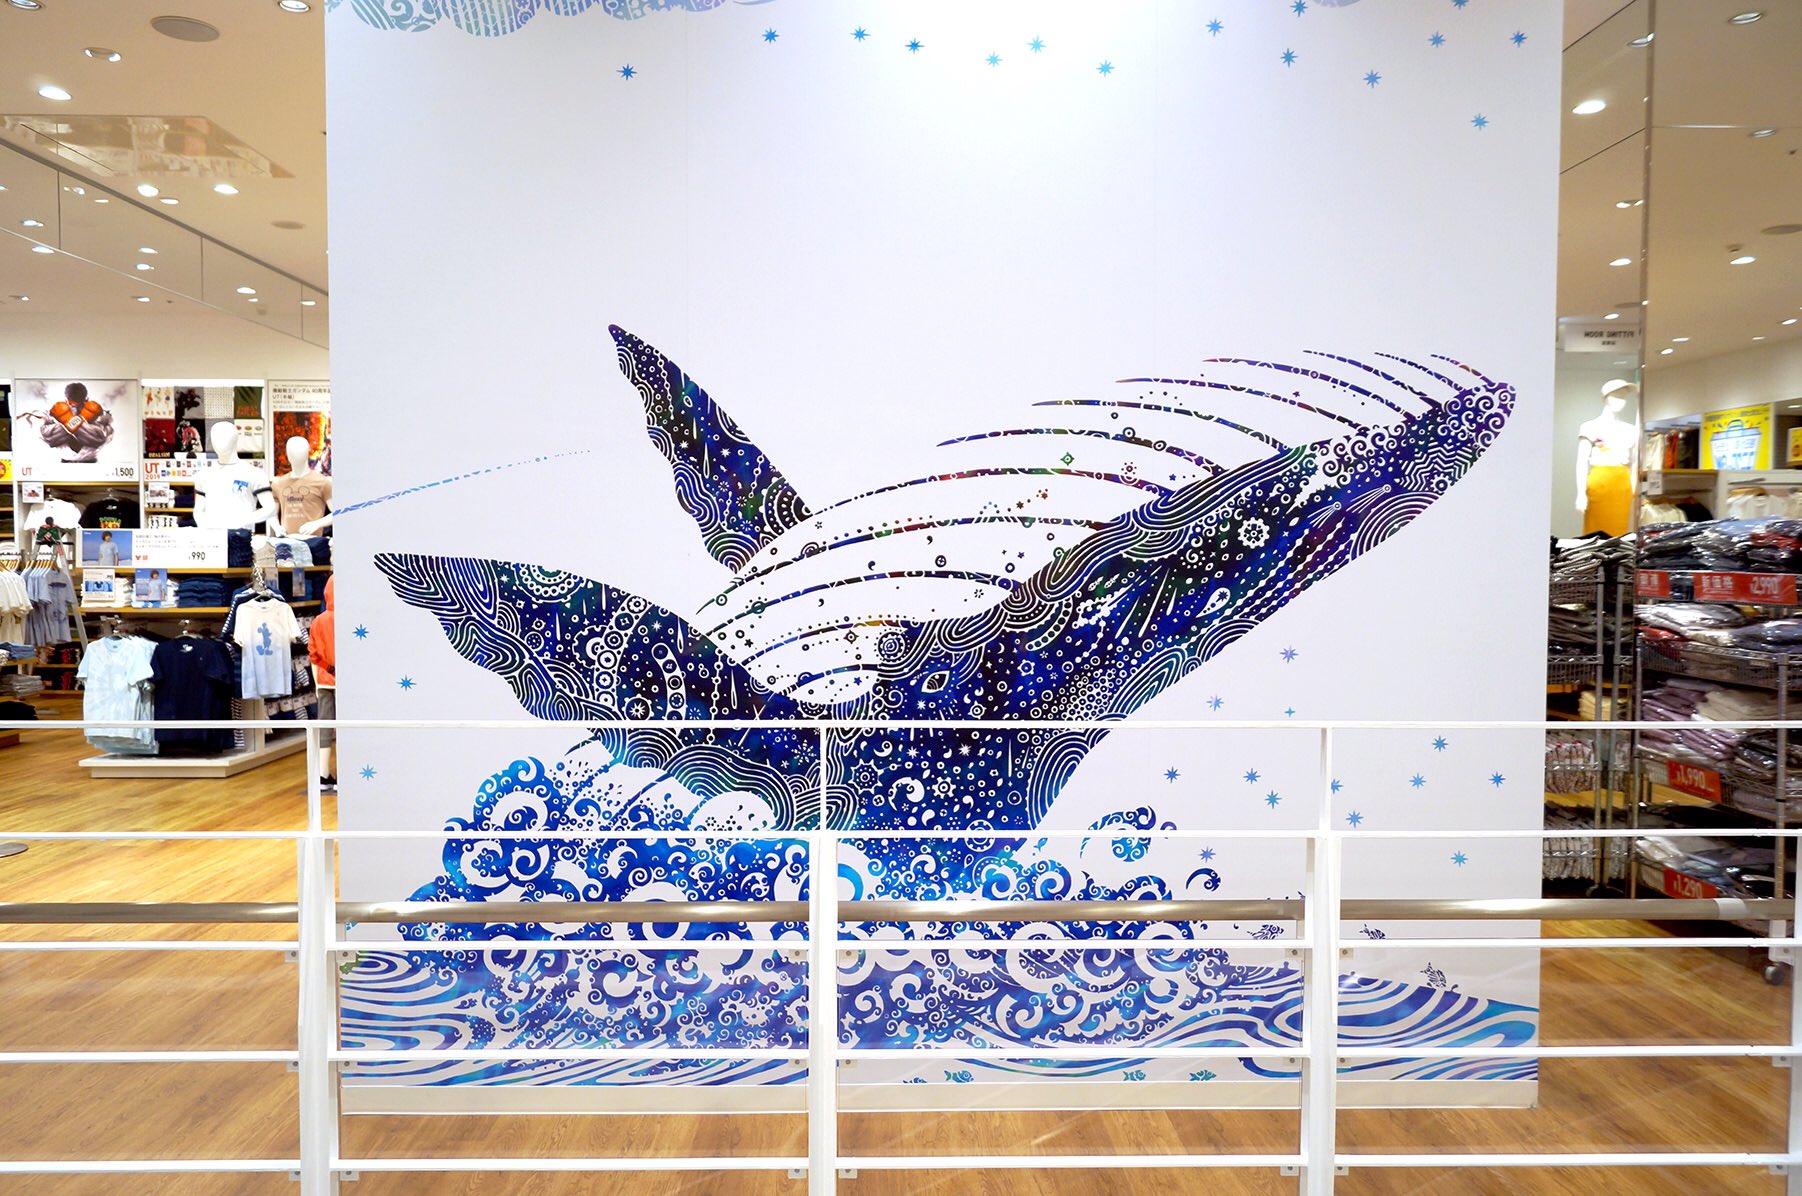 与儀勝之 Masayuki Yogi Di Twitter ユニクロ イオンモール沖縄ライカム店さんの壁面を装飾いたしました 売場面積2倍となり 県内最大の店舗にリニューアル 2階は 世界樹 を基にした地上の世界 1階を 青の世界 を基にした海の世界にしました Uniqlo